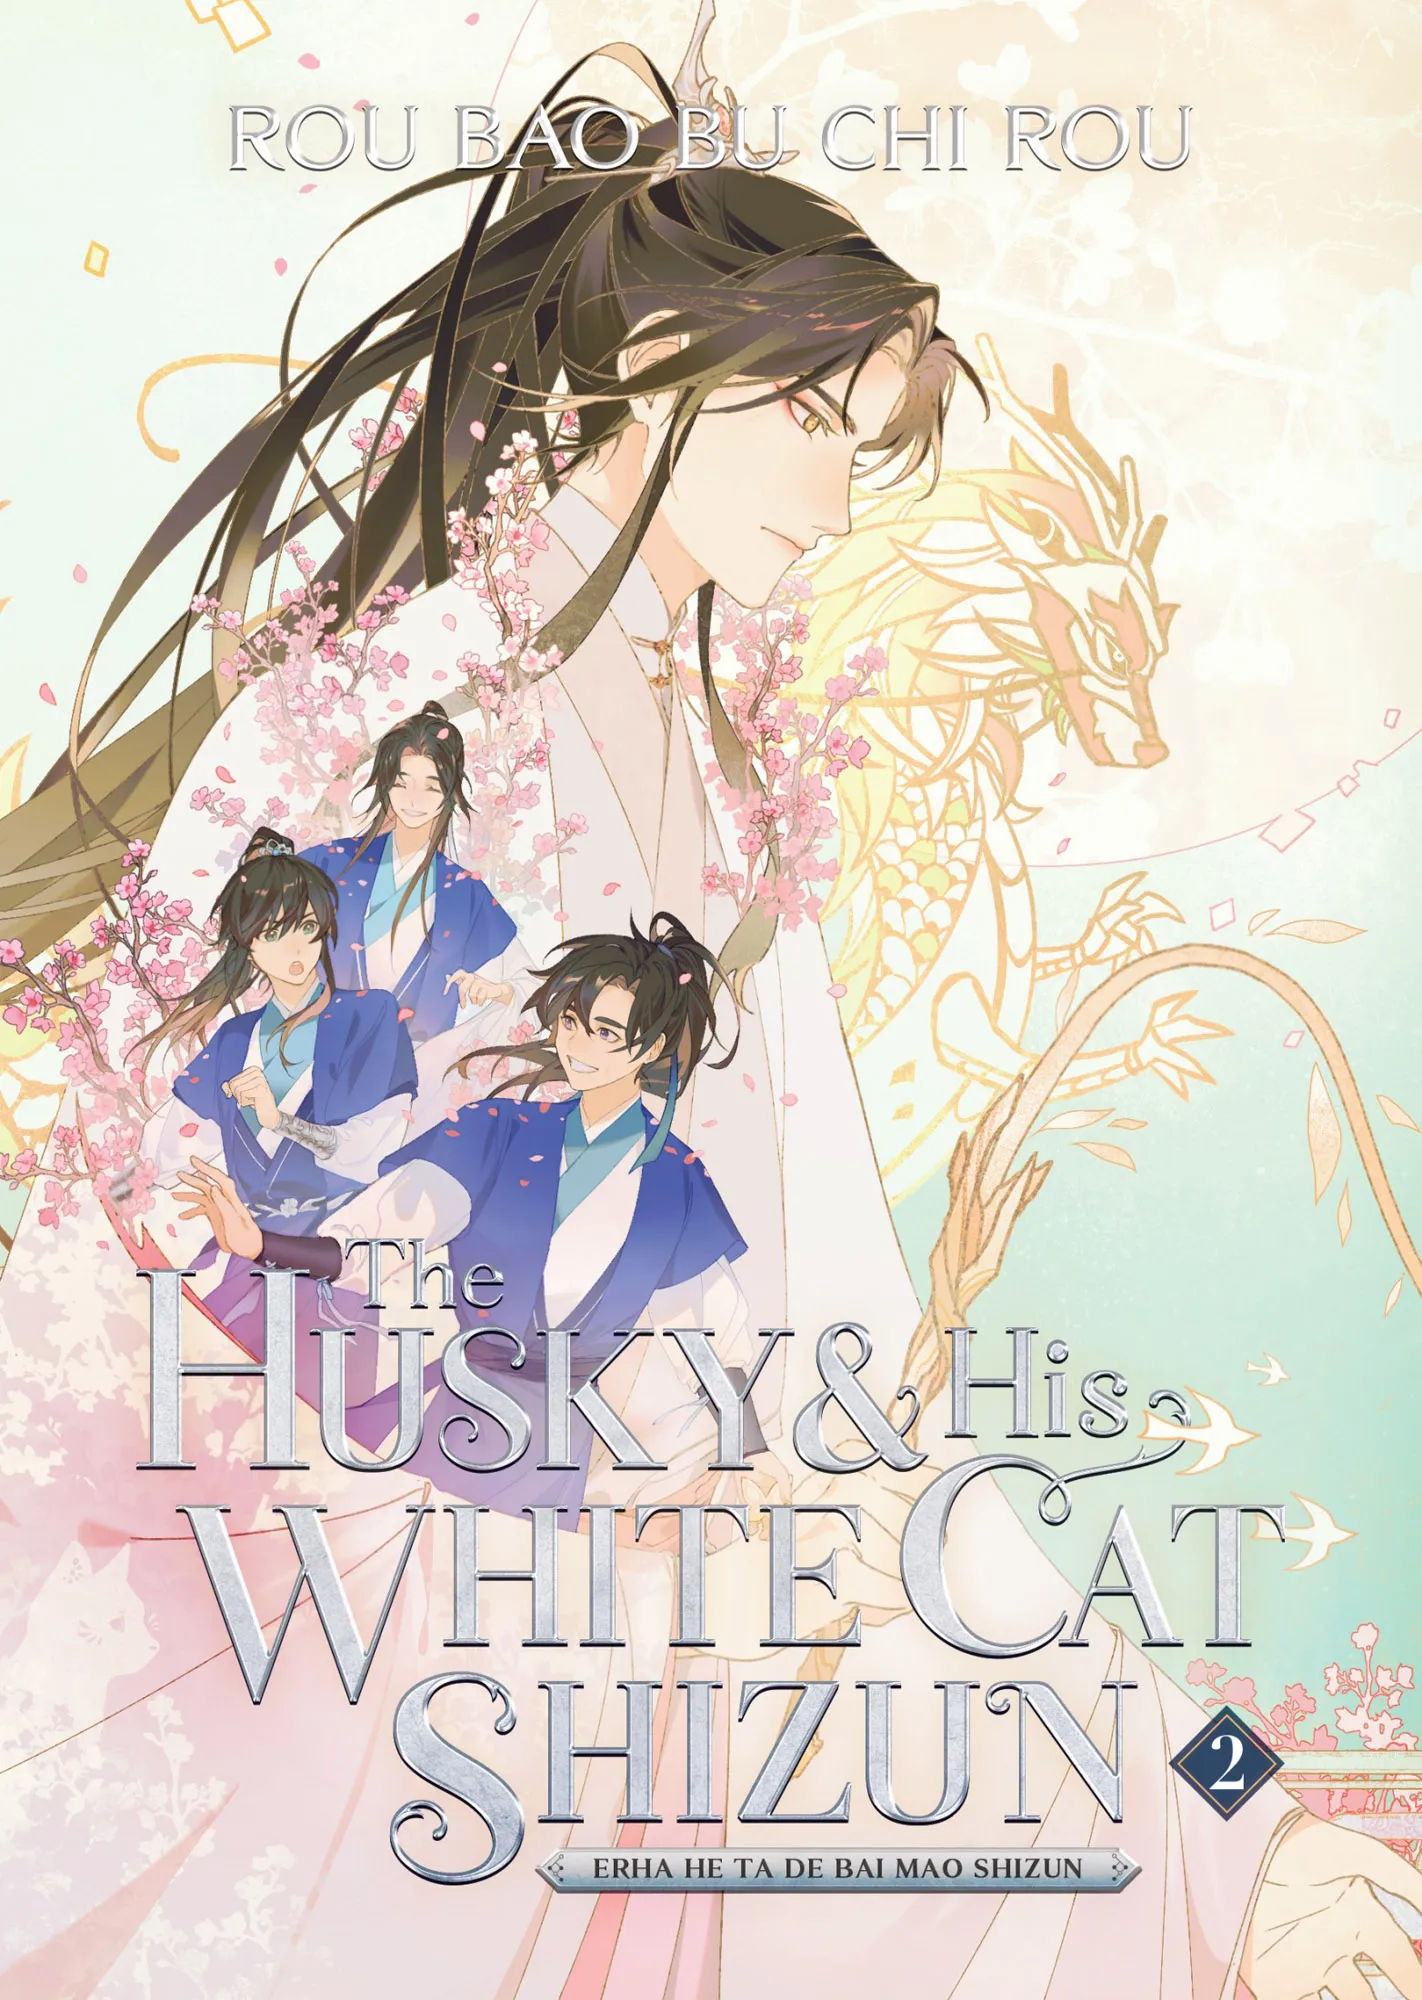 The Husky and His White Cat Shizun: Erha He Ta De Bai Mao Shizun Vol. 2 (The Husky and His White Cat Shizun: Erha He Ta De Bai Mao Shizun #2)